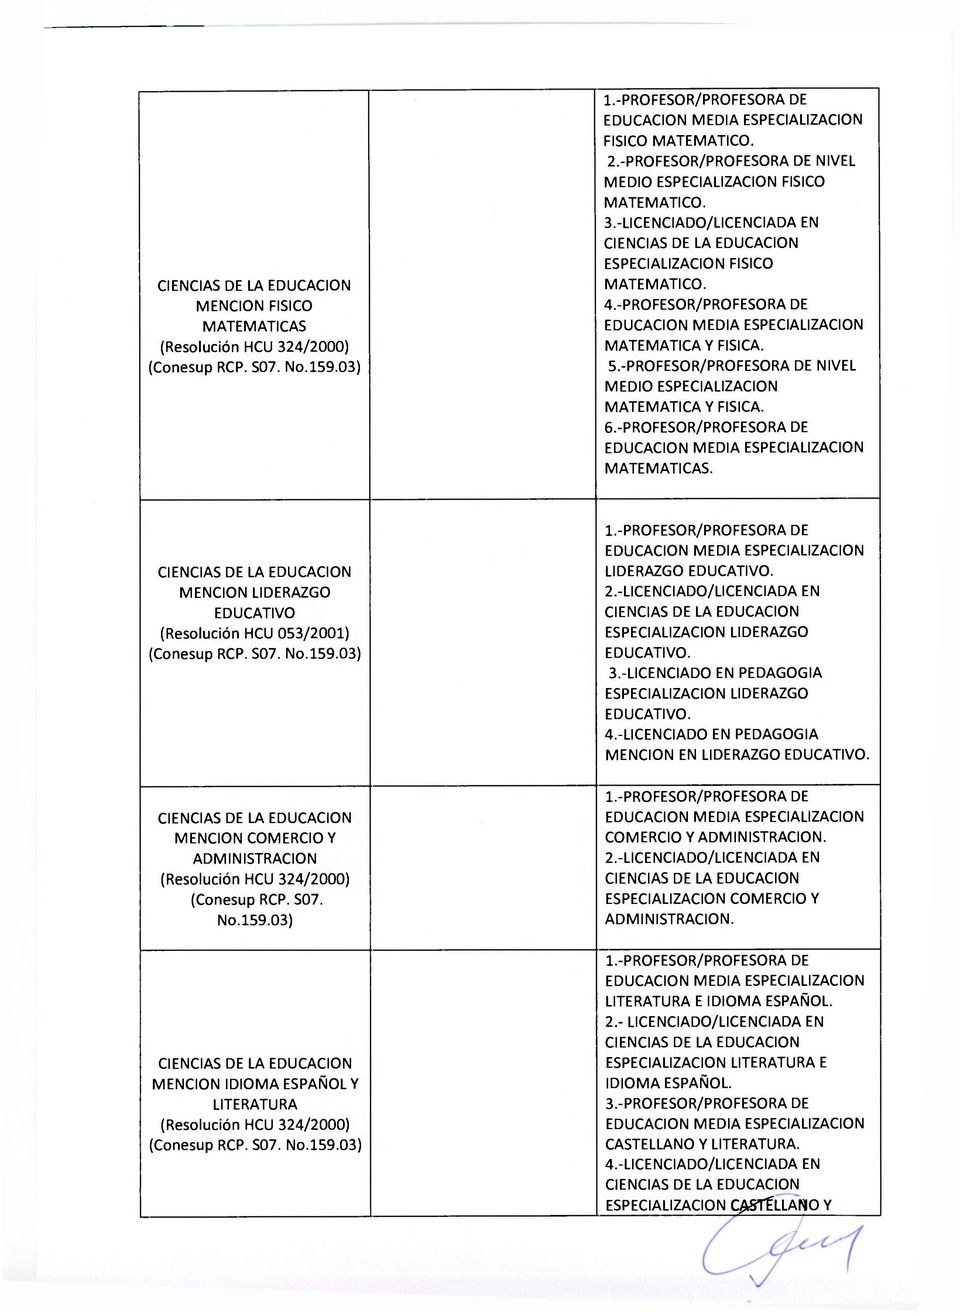 MENCION LIDERAZGO EDUCATIVO (Resolución HCU 053/2001) MENCION COMERCIO Y ADMINISTRACION (Resolución HCU 324/2000) (Conesup RCP. S07. No.159.